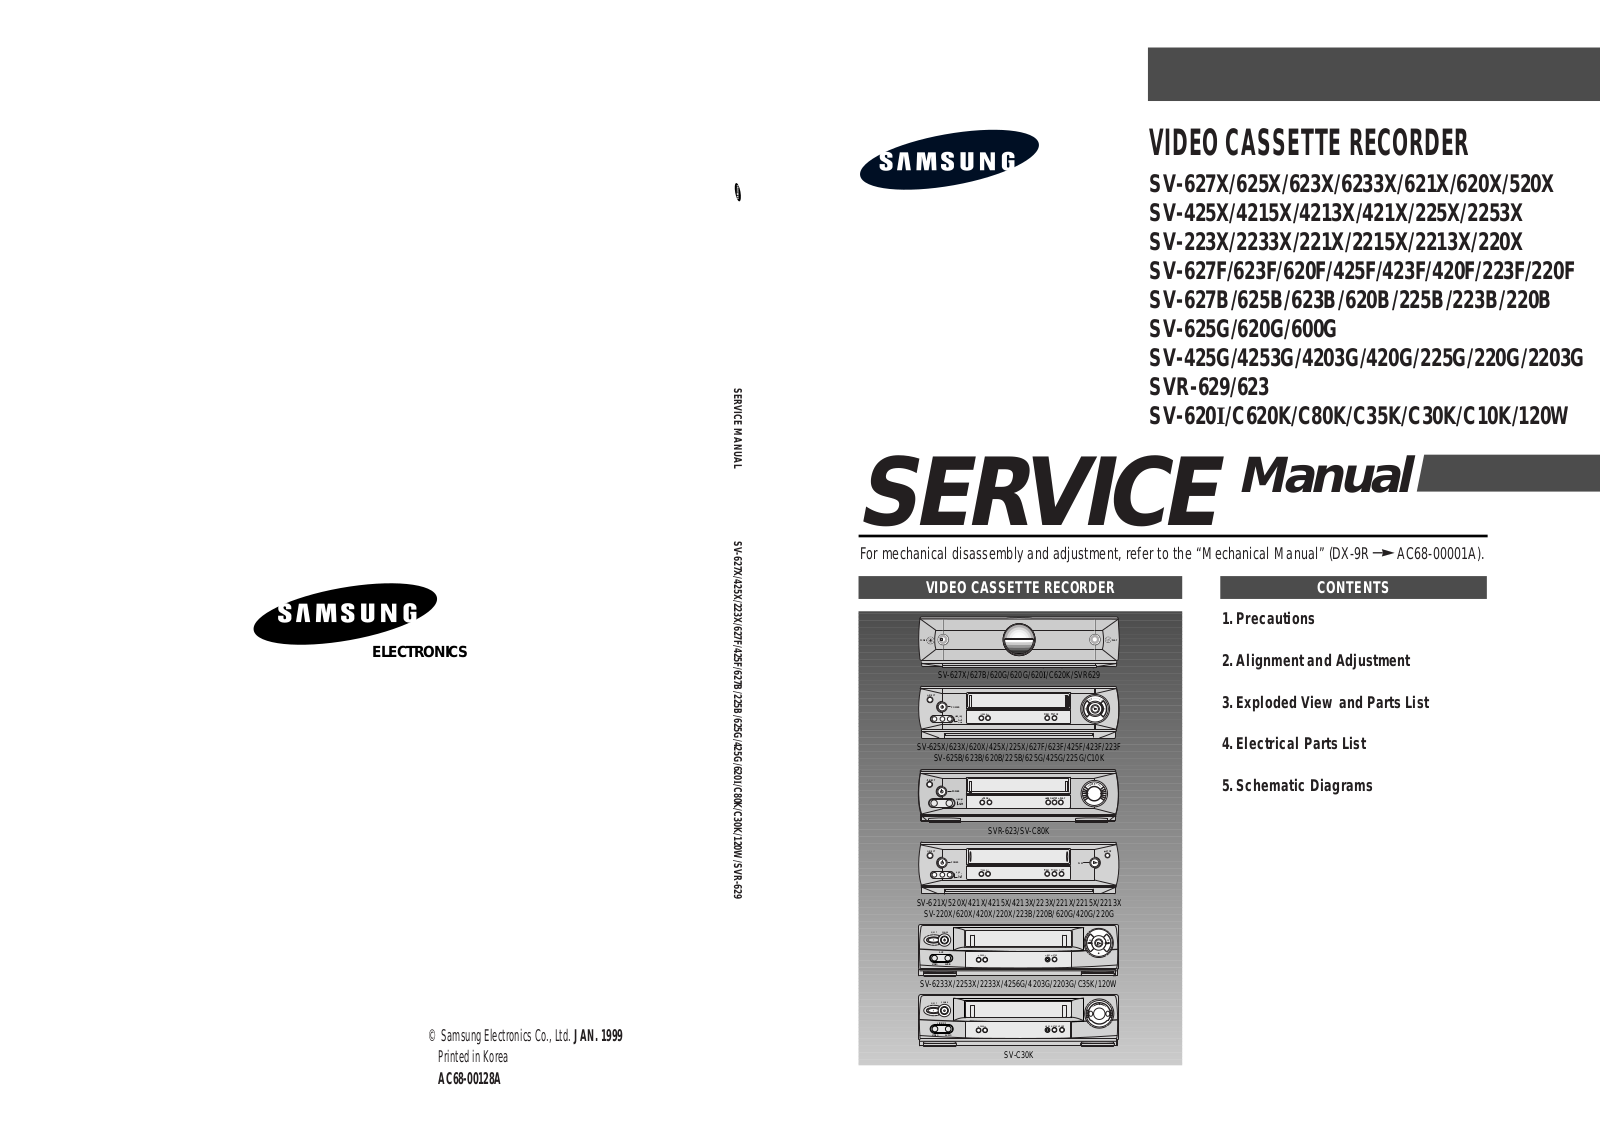 Samsung SV-423F, SV-120W, SV-C10K, SV-C30K, SV-C35K Service Manual